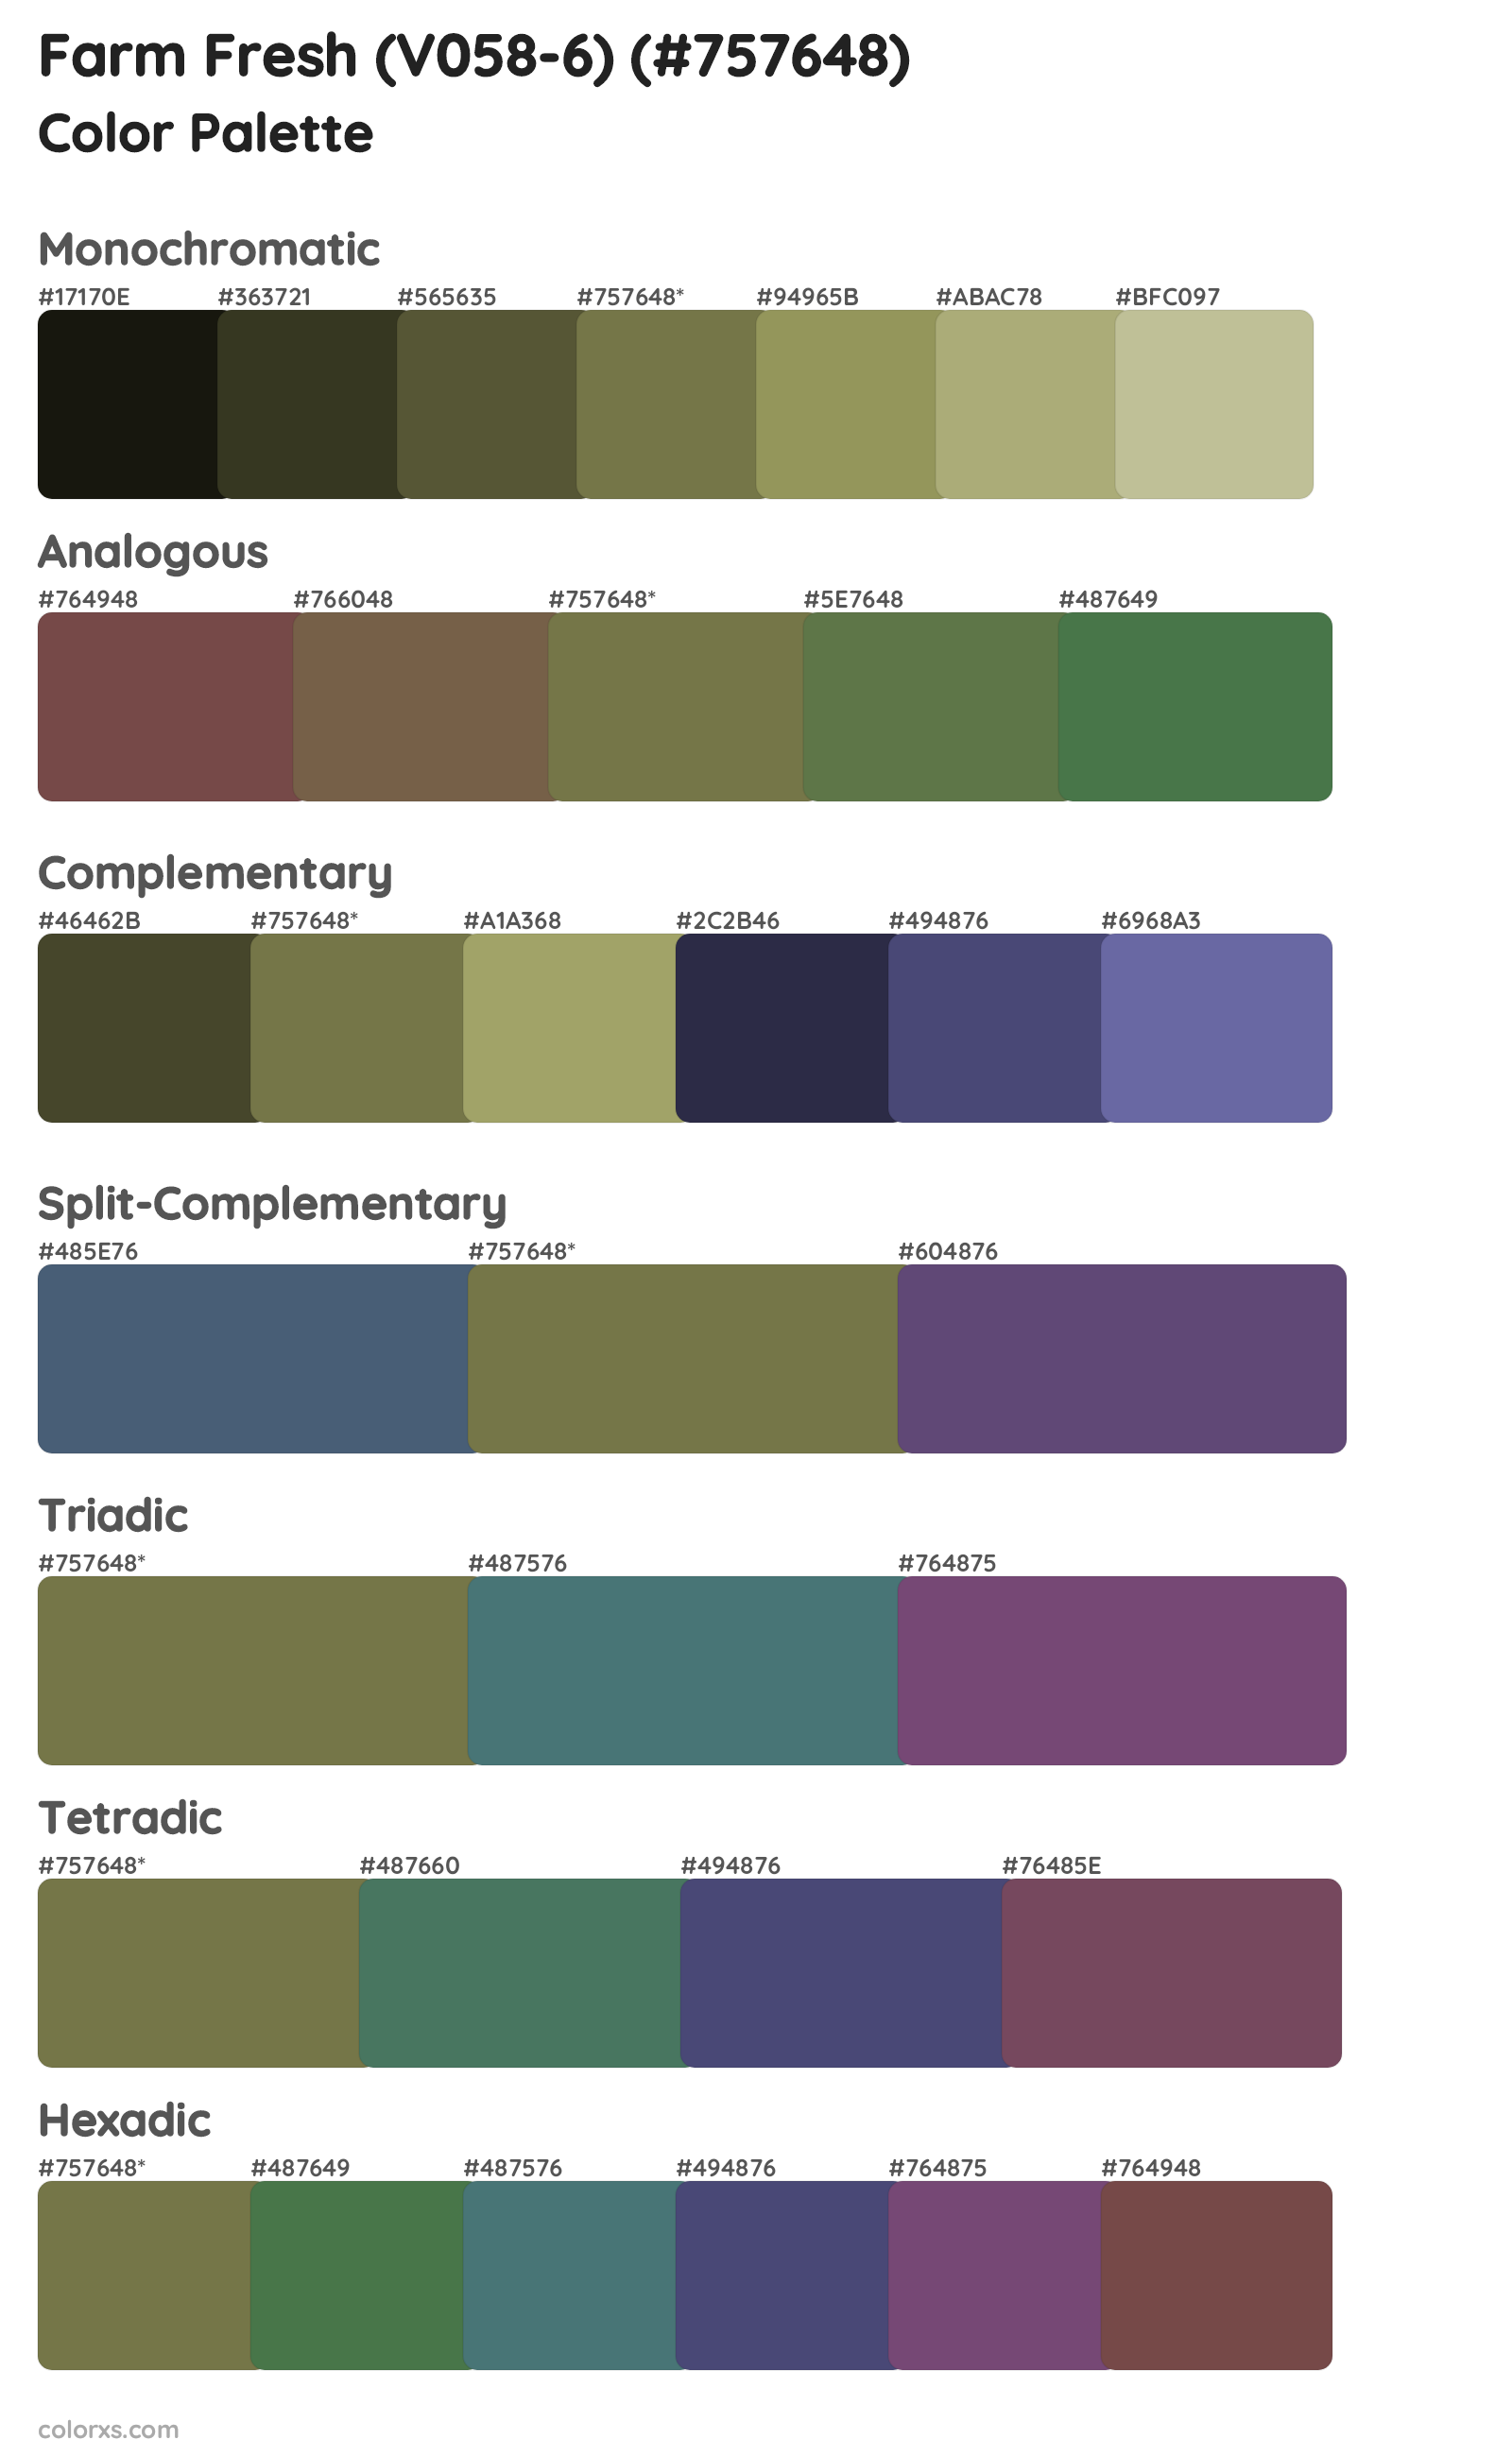 Farm Fresh (V058-6) Color Scheme Palettes